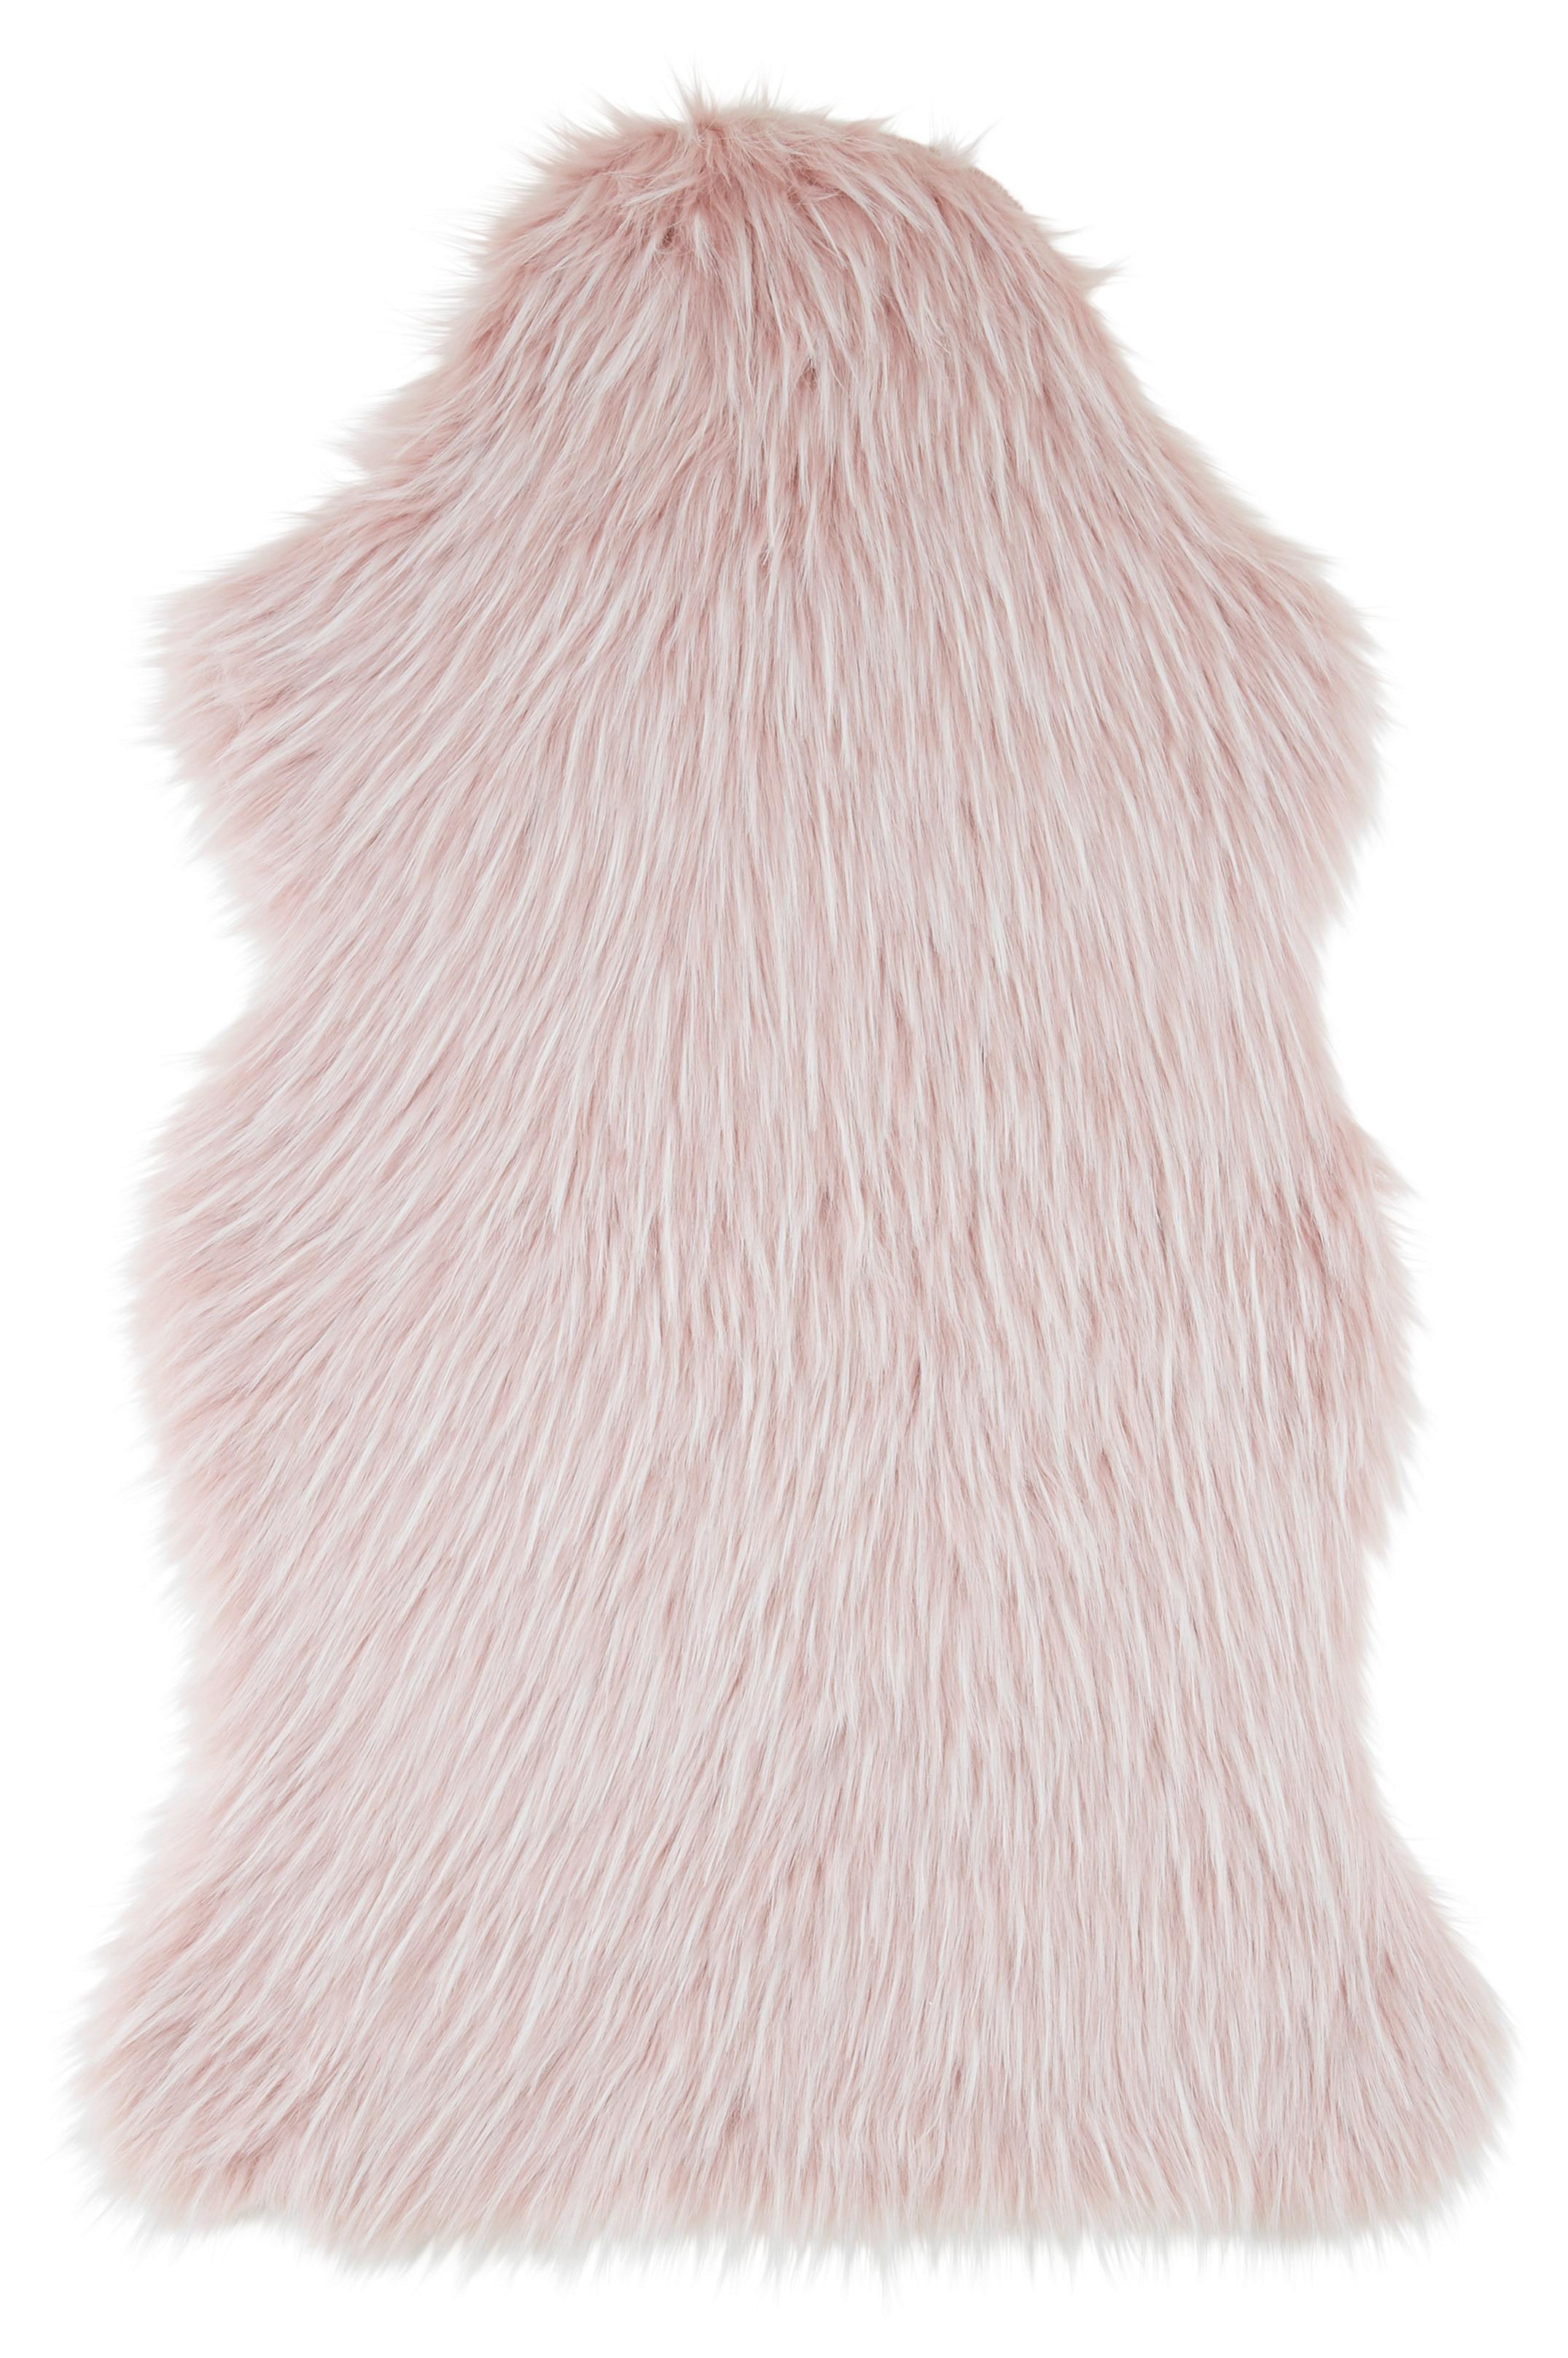 Umelá Kožušina Marina, 90/60cm, Ružová - biela/ružová, textil/kožušina (60/90cm) - Modern Living